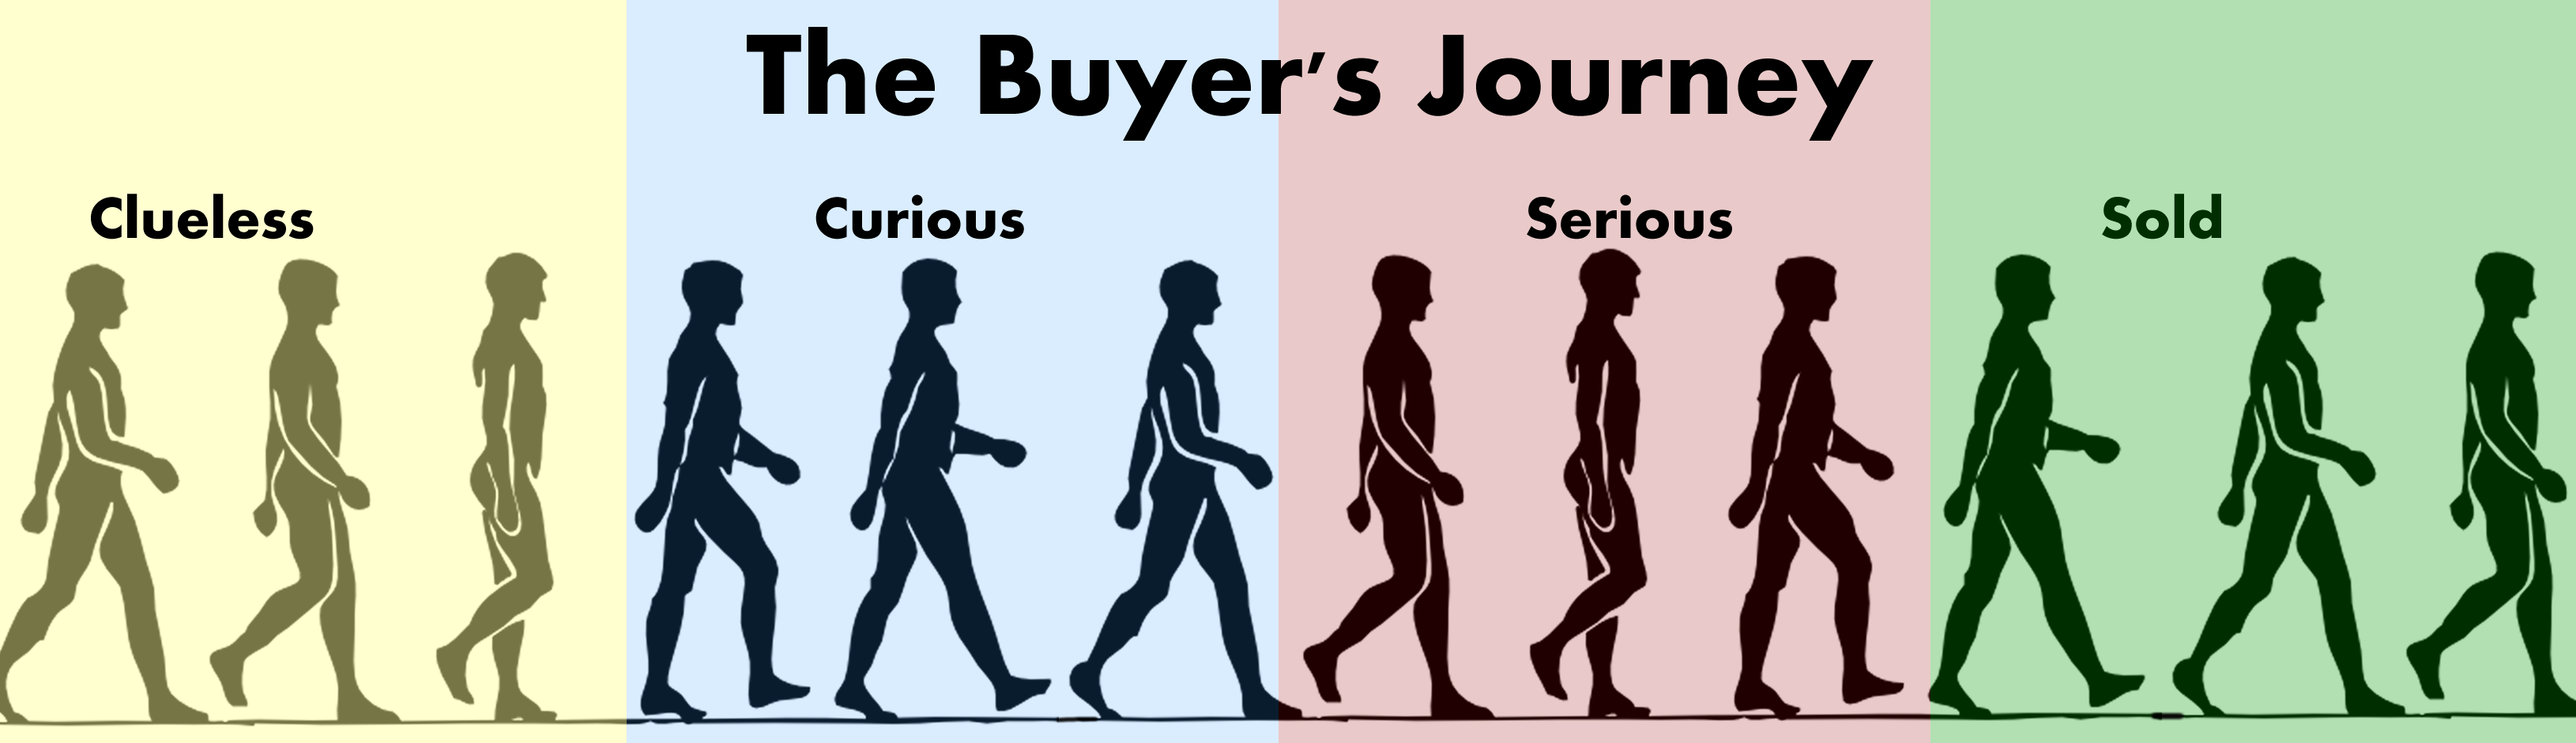 Buyers-Journey-long